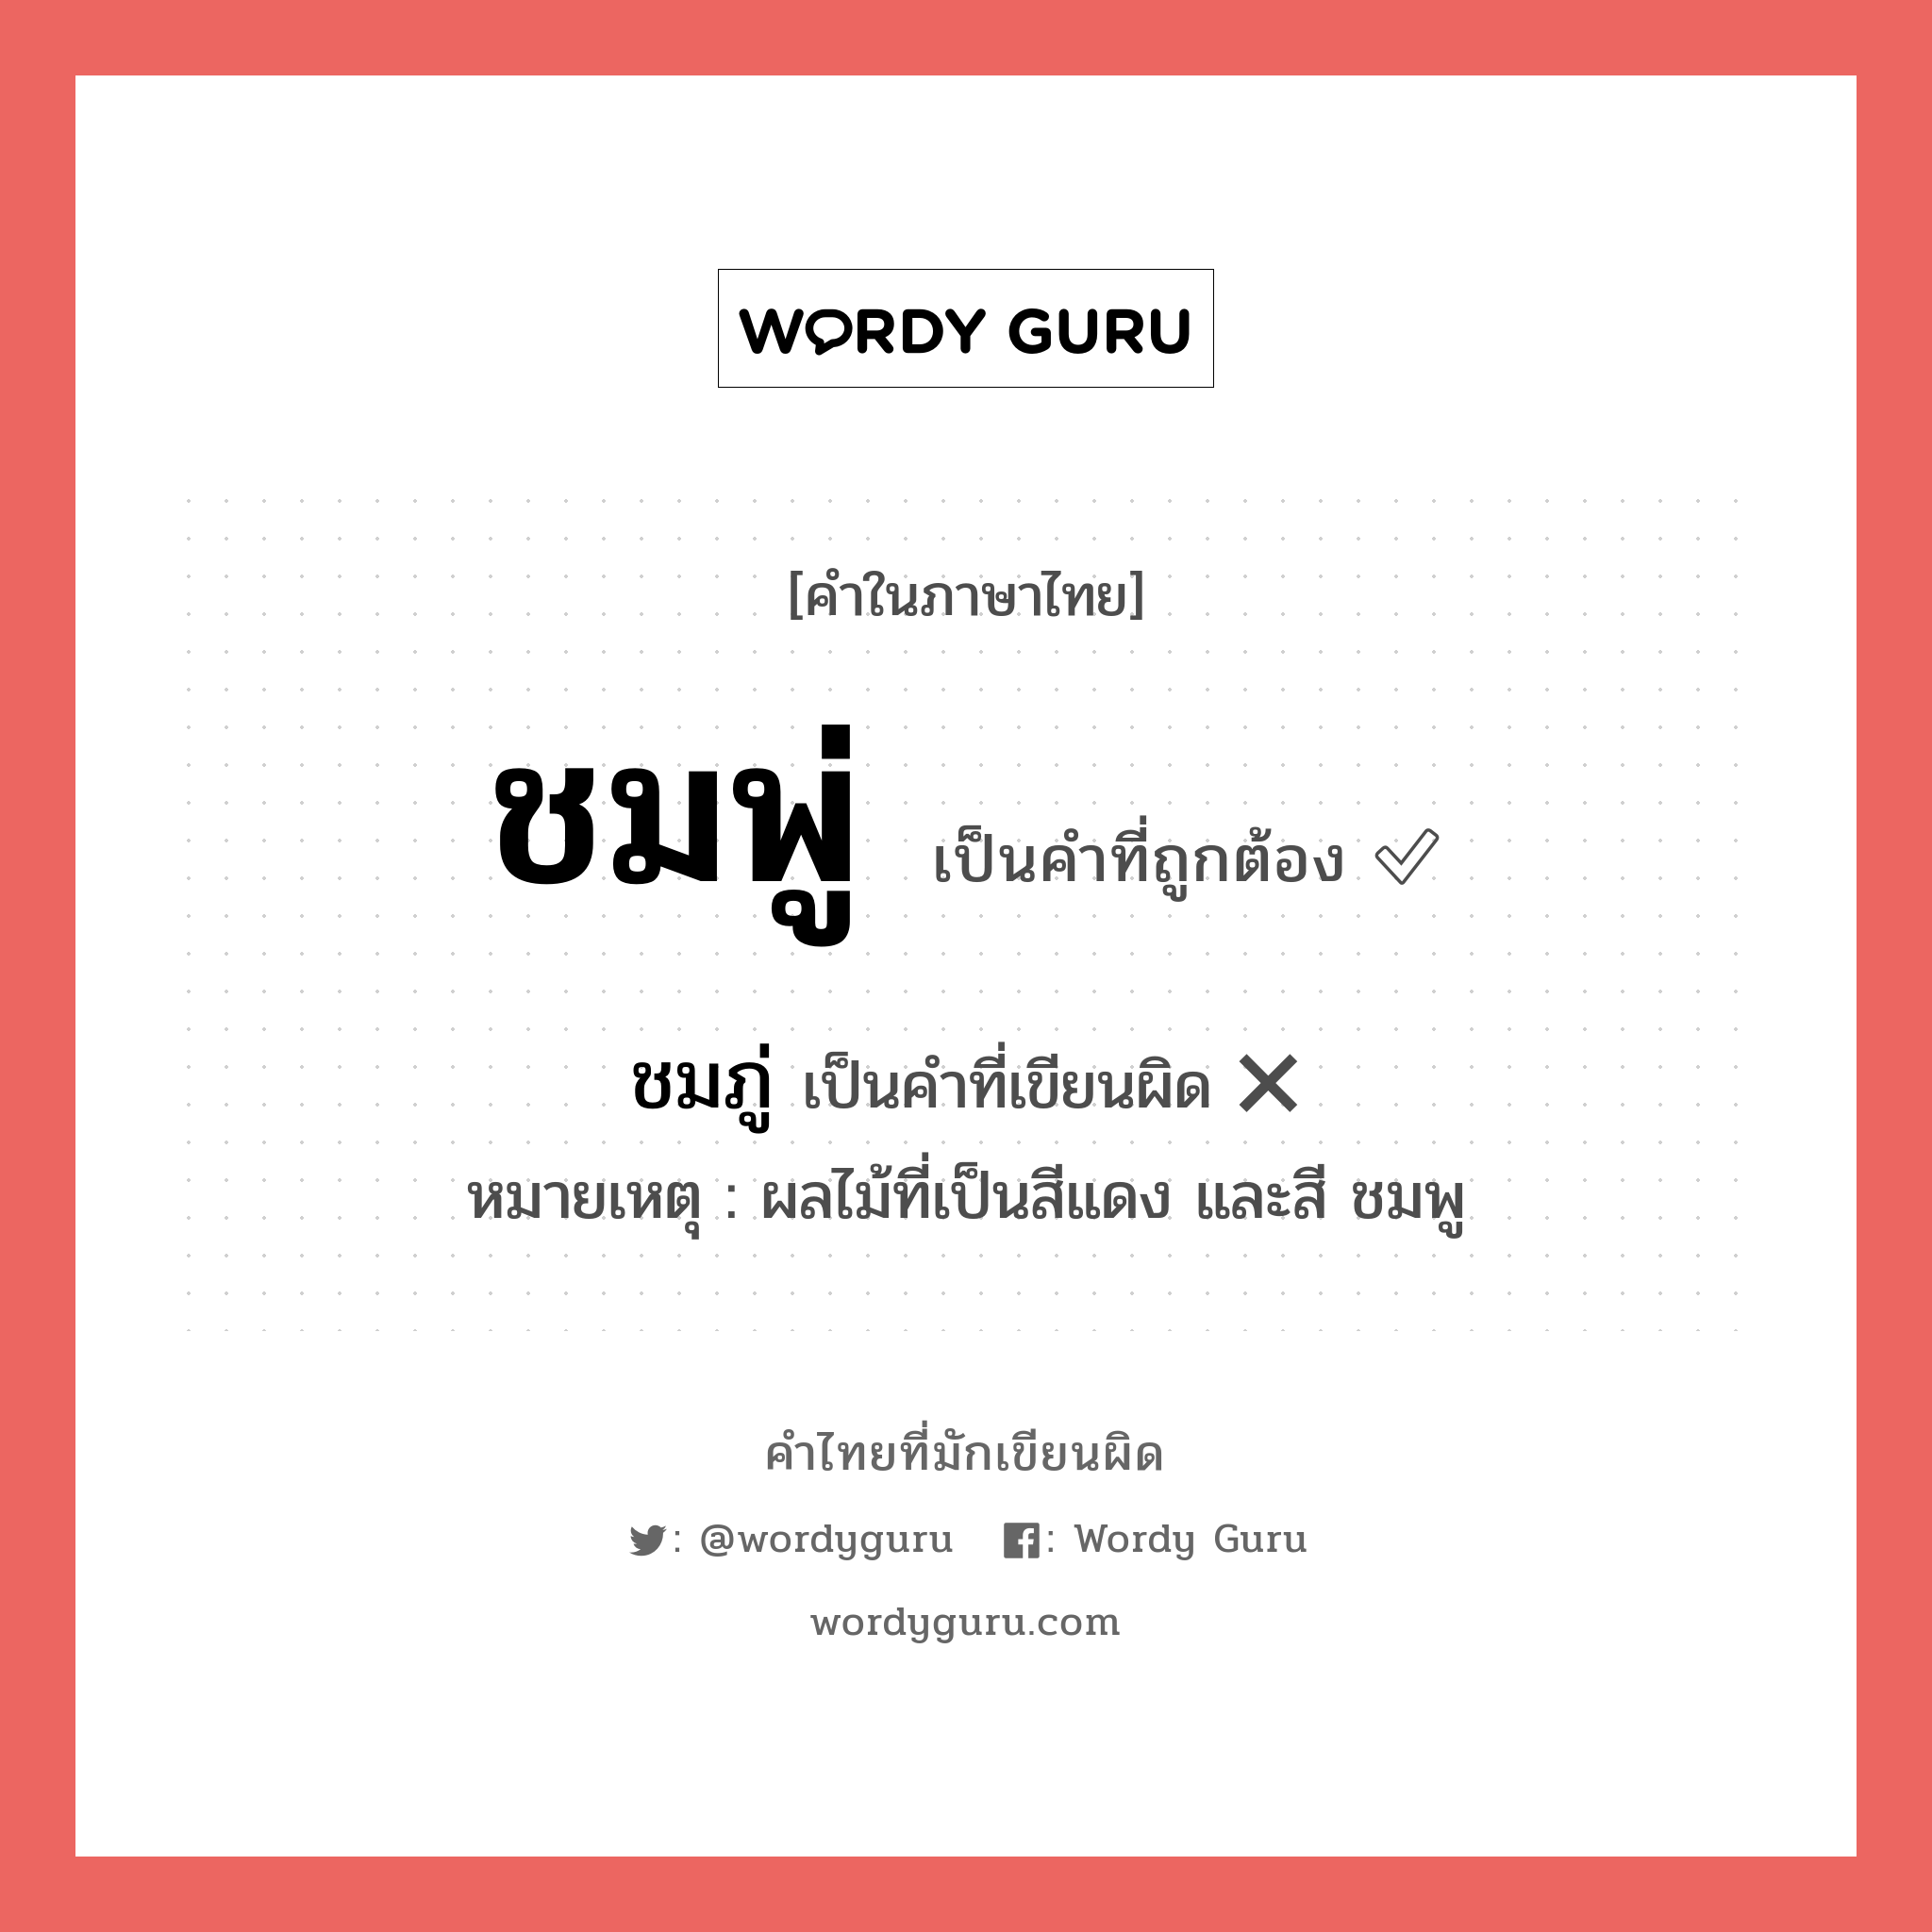 ชมพู่ หรือ ชมภู่ เขียนยังไง? คำไหนเขียนถูก?, คำในภาษาไทยที่มักเขียนผิด ชมพู่ คำที่ผิด ❌ ชมภู่ หมายเหตุ ผลไม้ที่เป็นสีแดง และสี ชมพู